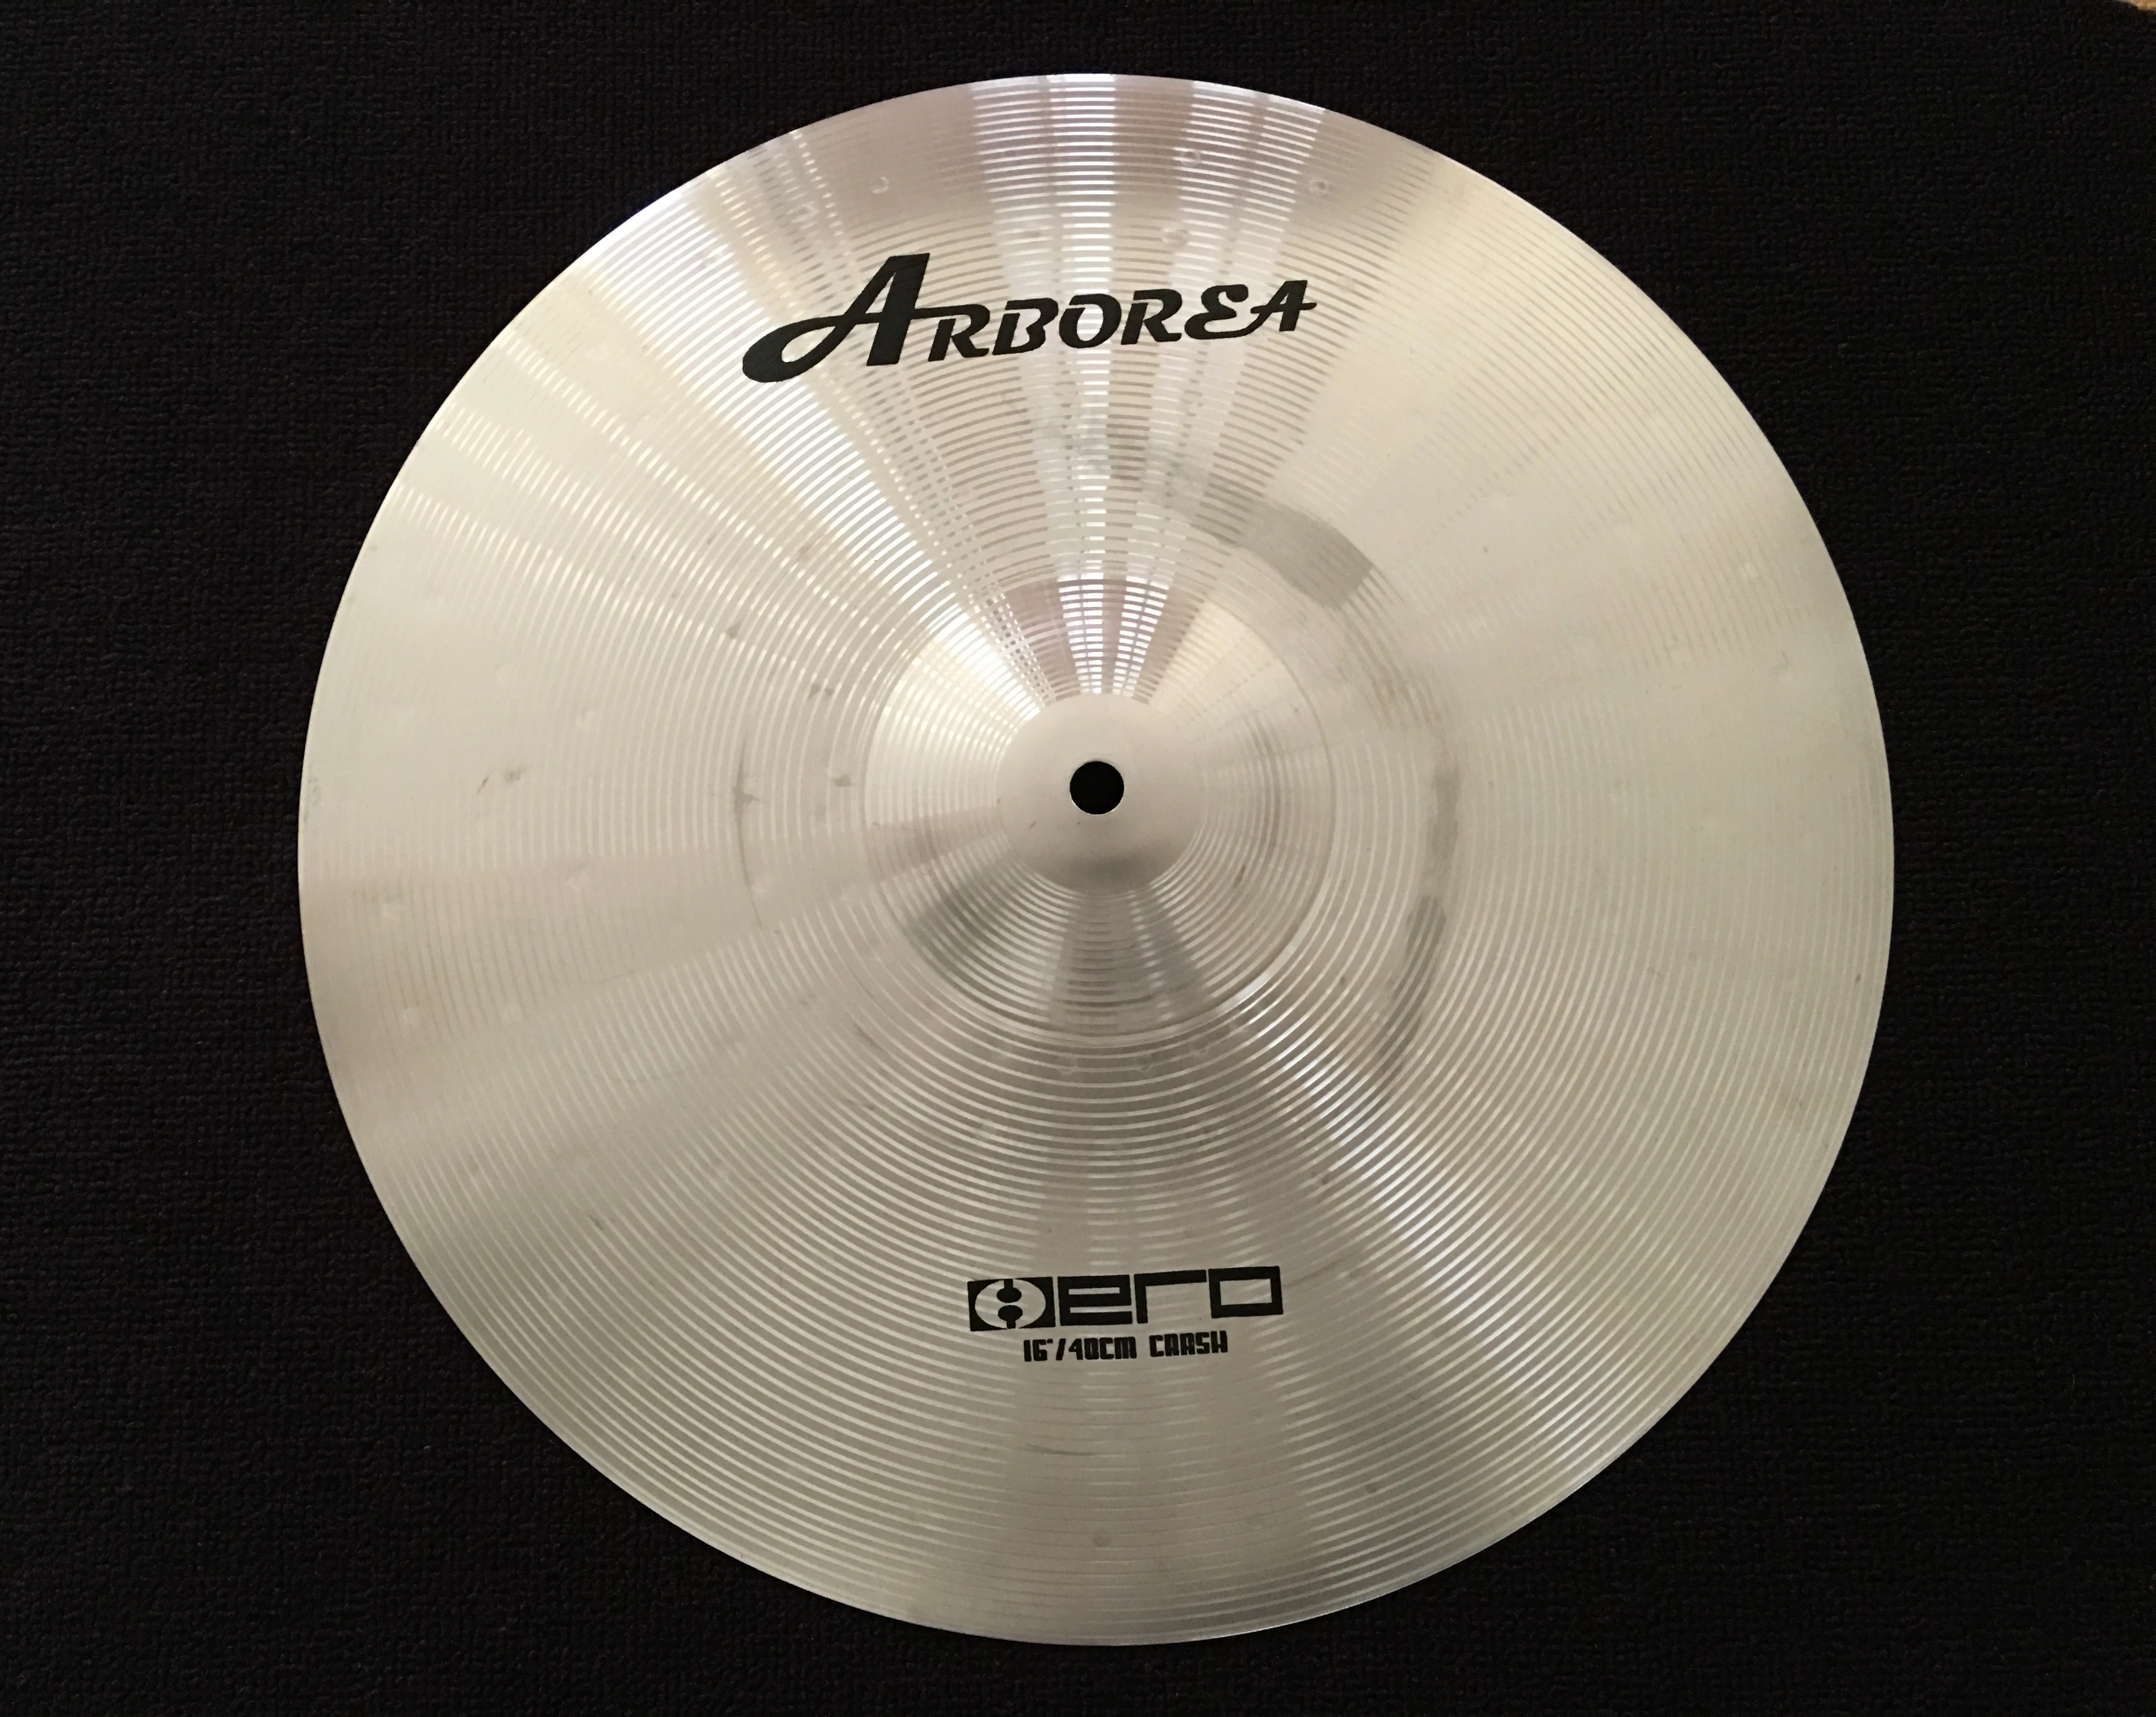 Тарелка arborea HERO 20 дюймов 50 см для барабанщика Изготовленная вручную тарелка |